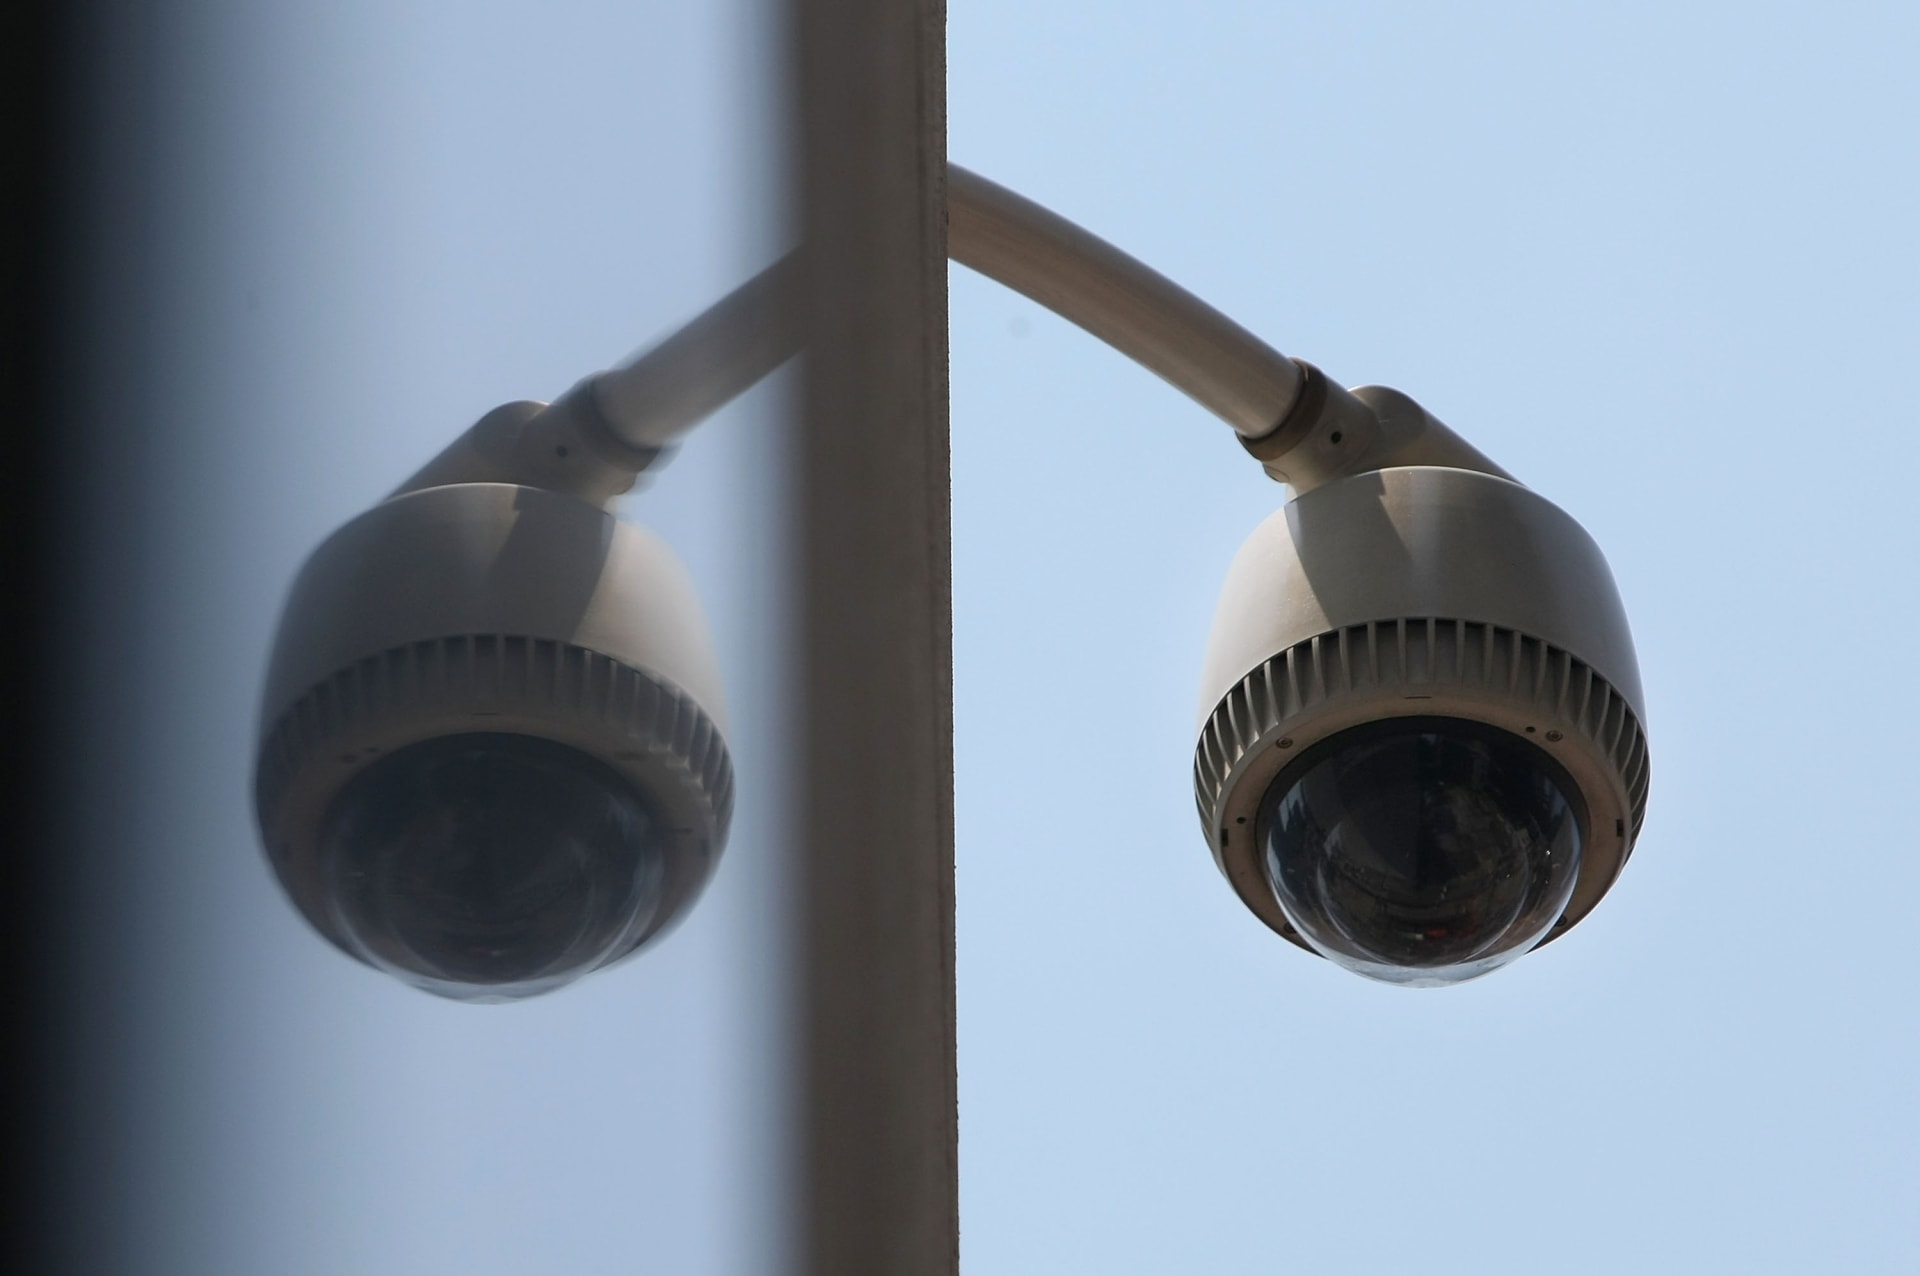 السعودية.. تحديد موعد تنفيذ قرار تركيب كاميرات مراقبة أمنية وتوضيح حول "المنازل والمجمعات الخاص"